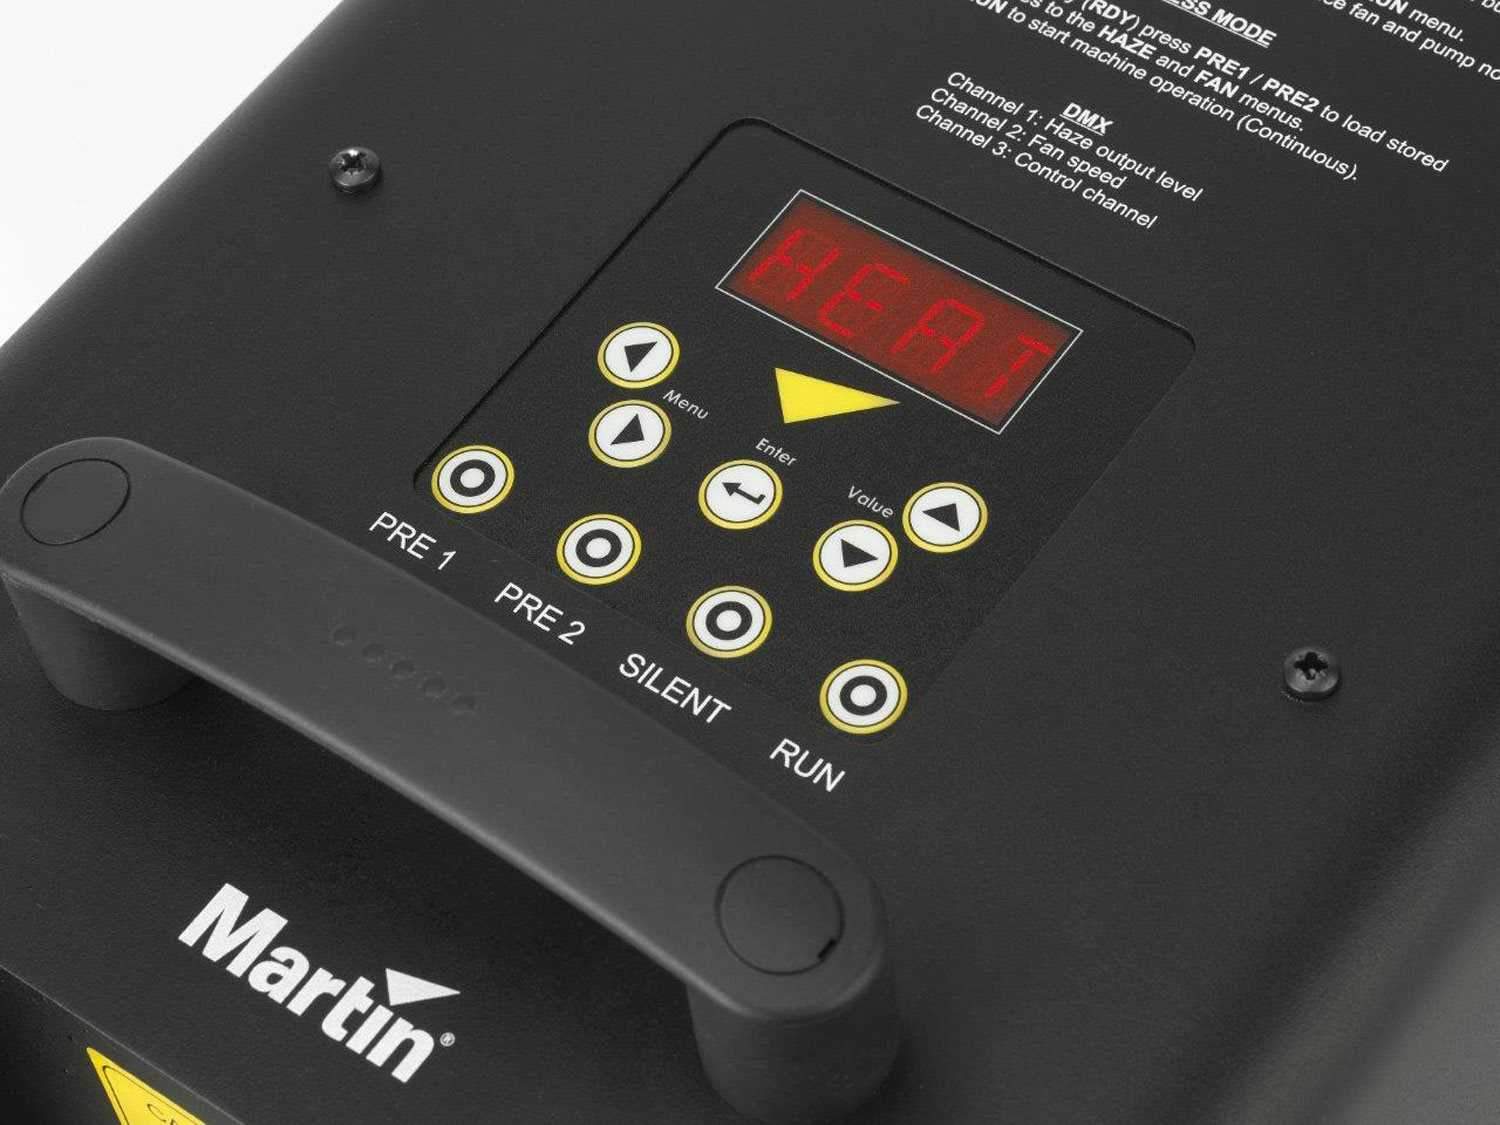 Martin JEM Hazer Pro 120V DMX Haze Machine - ProSound and Stage Lighting